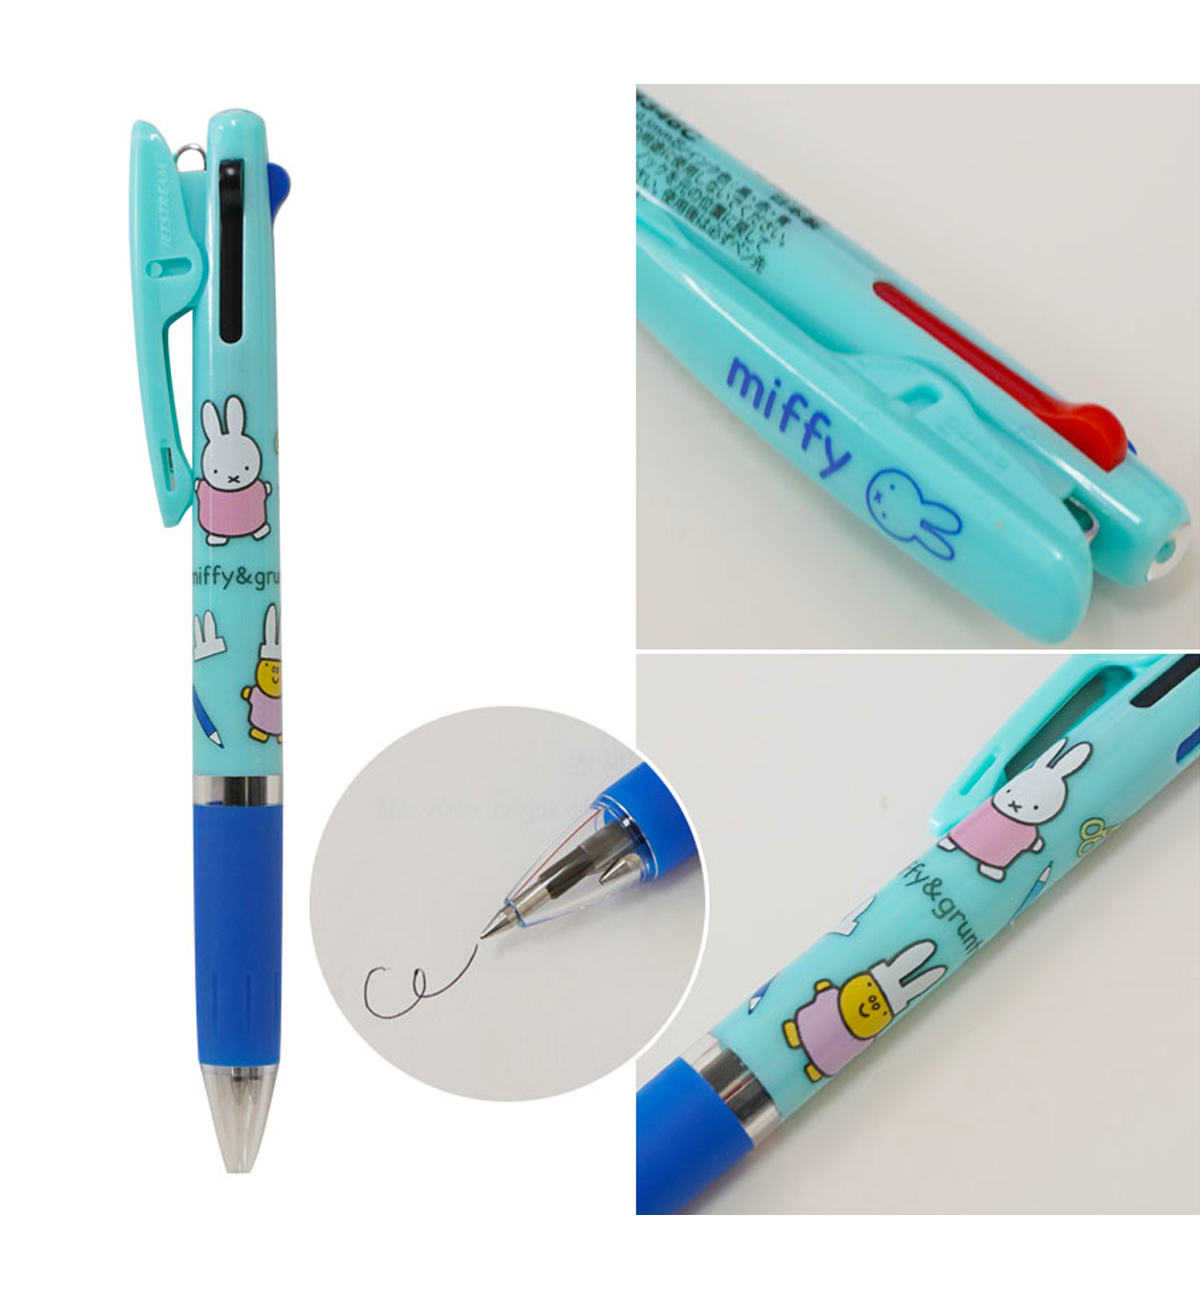 Miffy Jetstream 0.5mm Pen [Art Class]